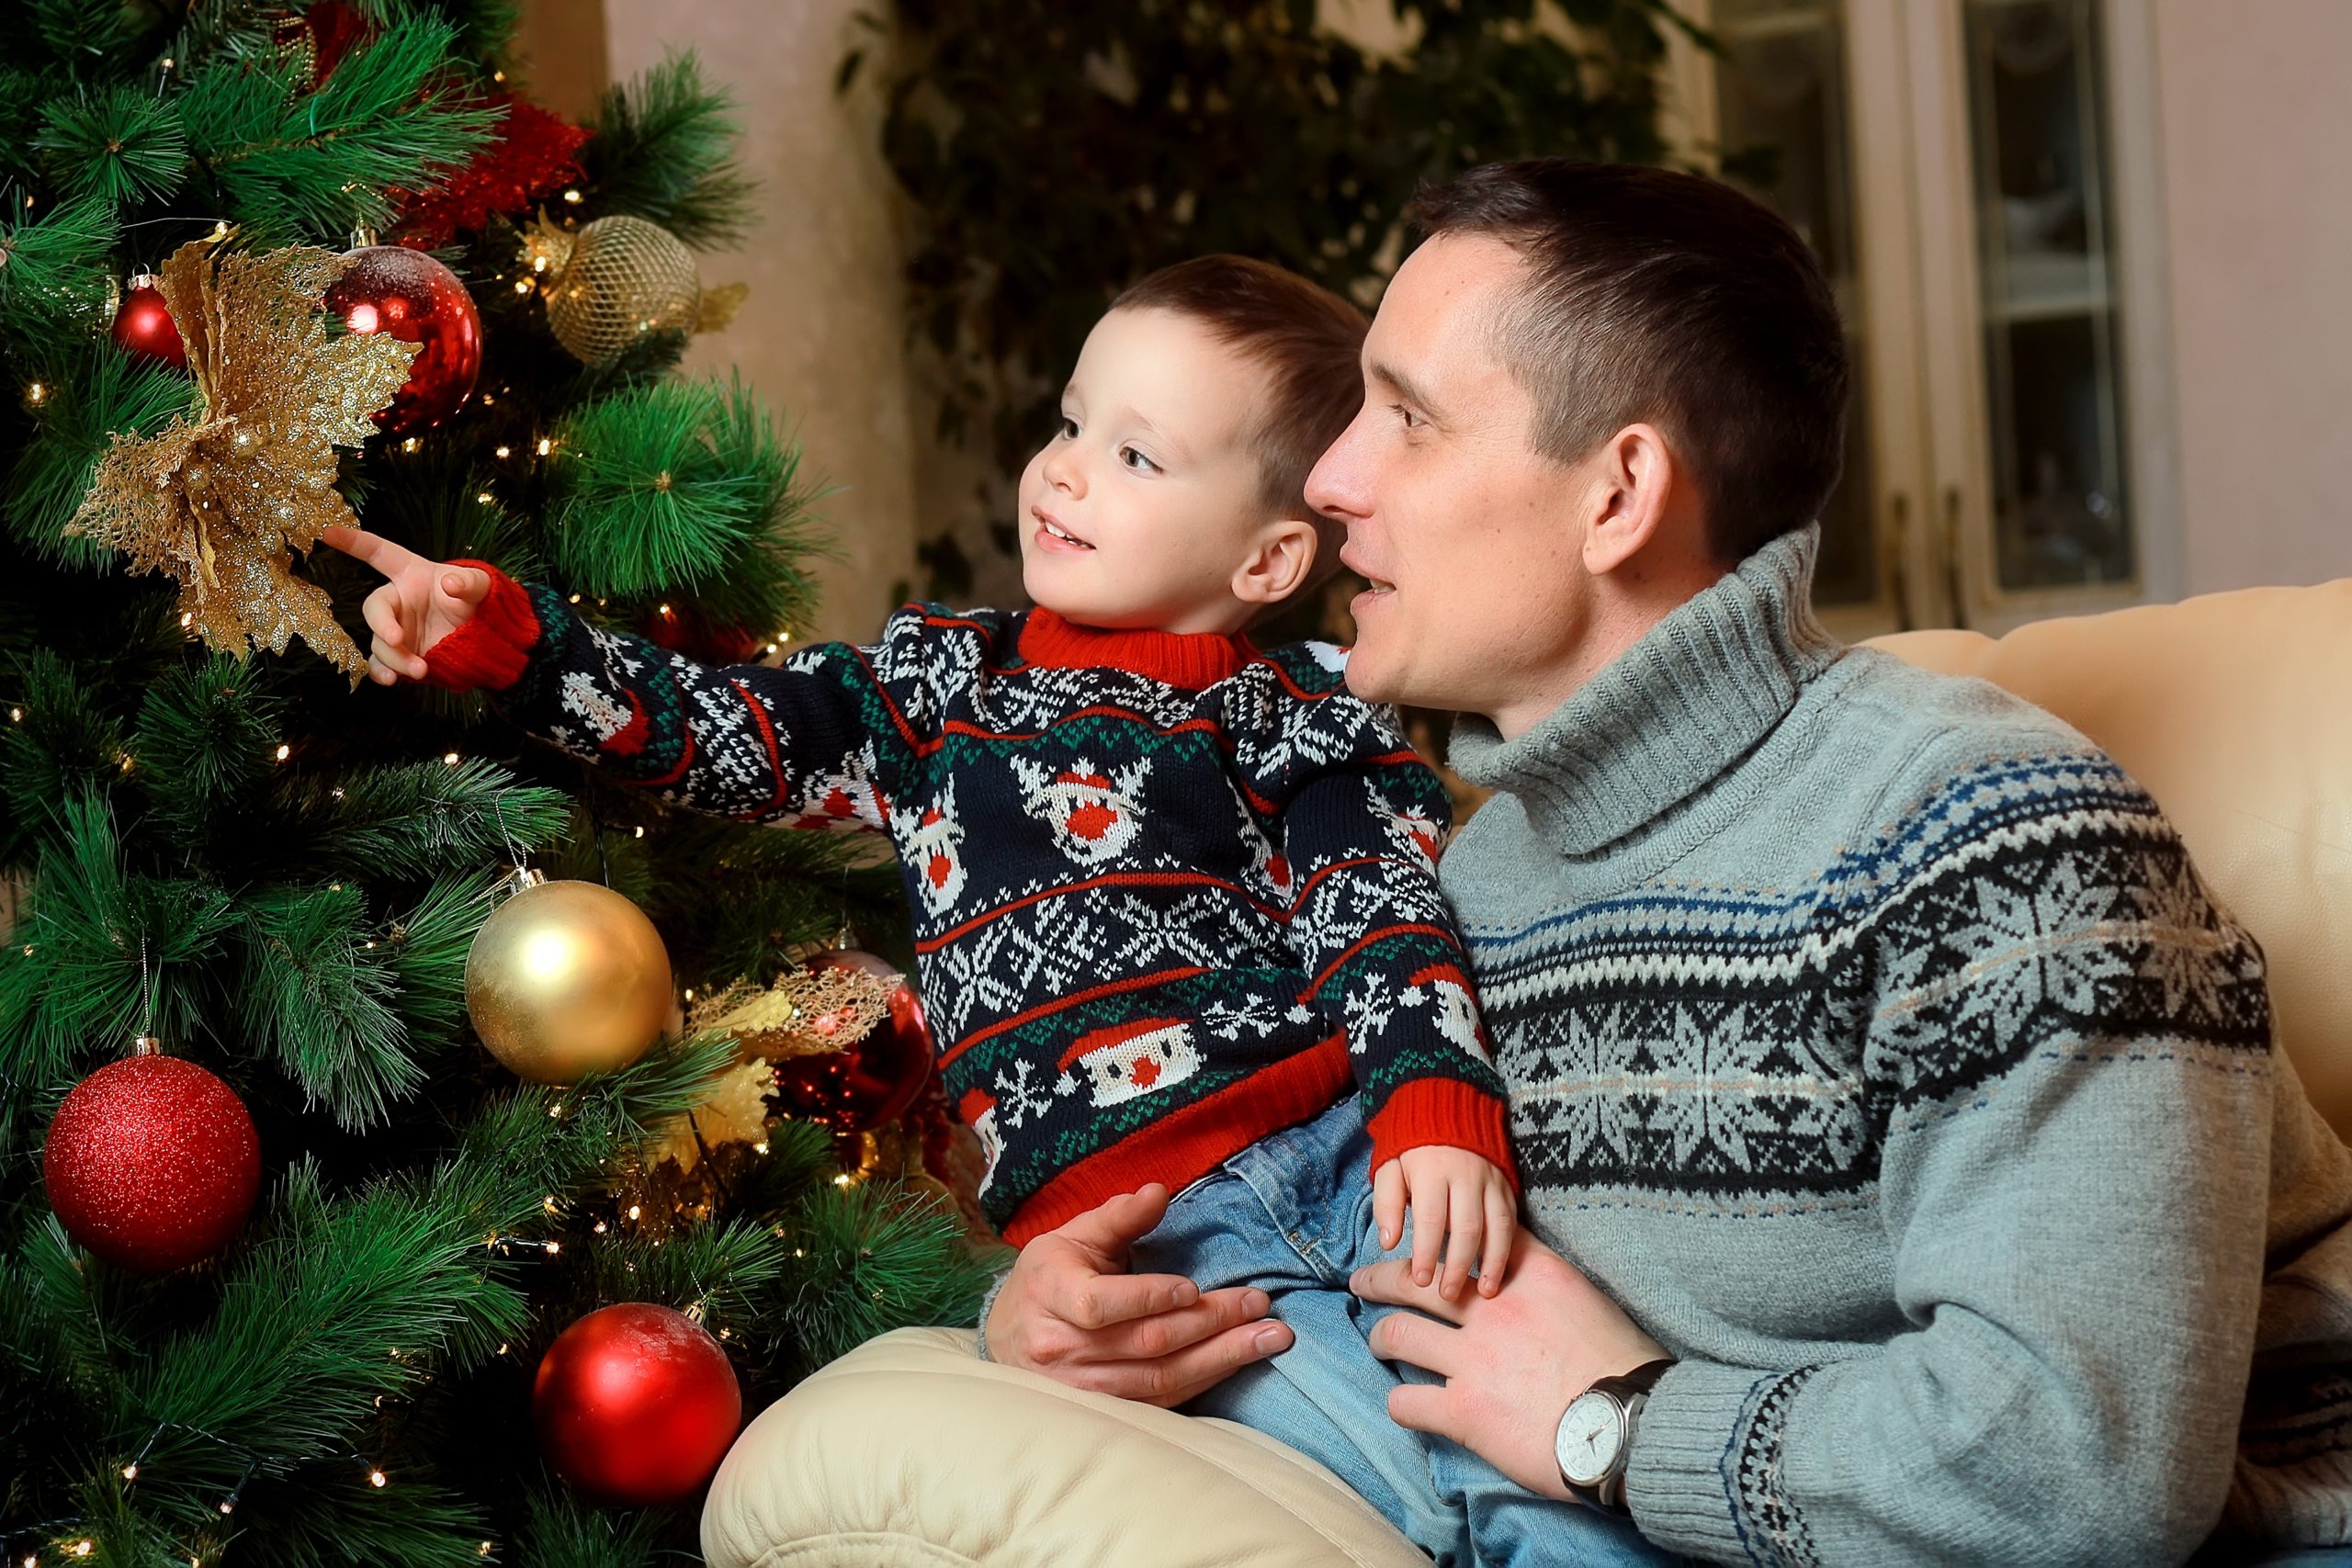 A Douglas Magyarország karácsonyi LMBTQ-reklámmal érzékenyít